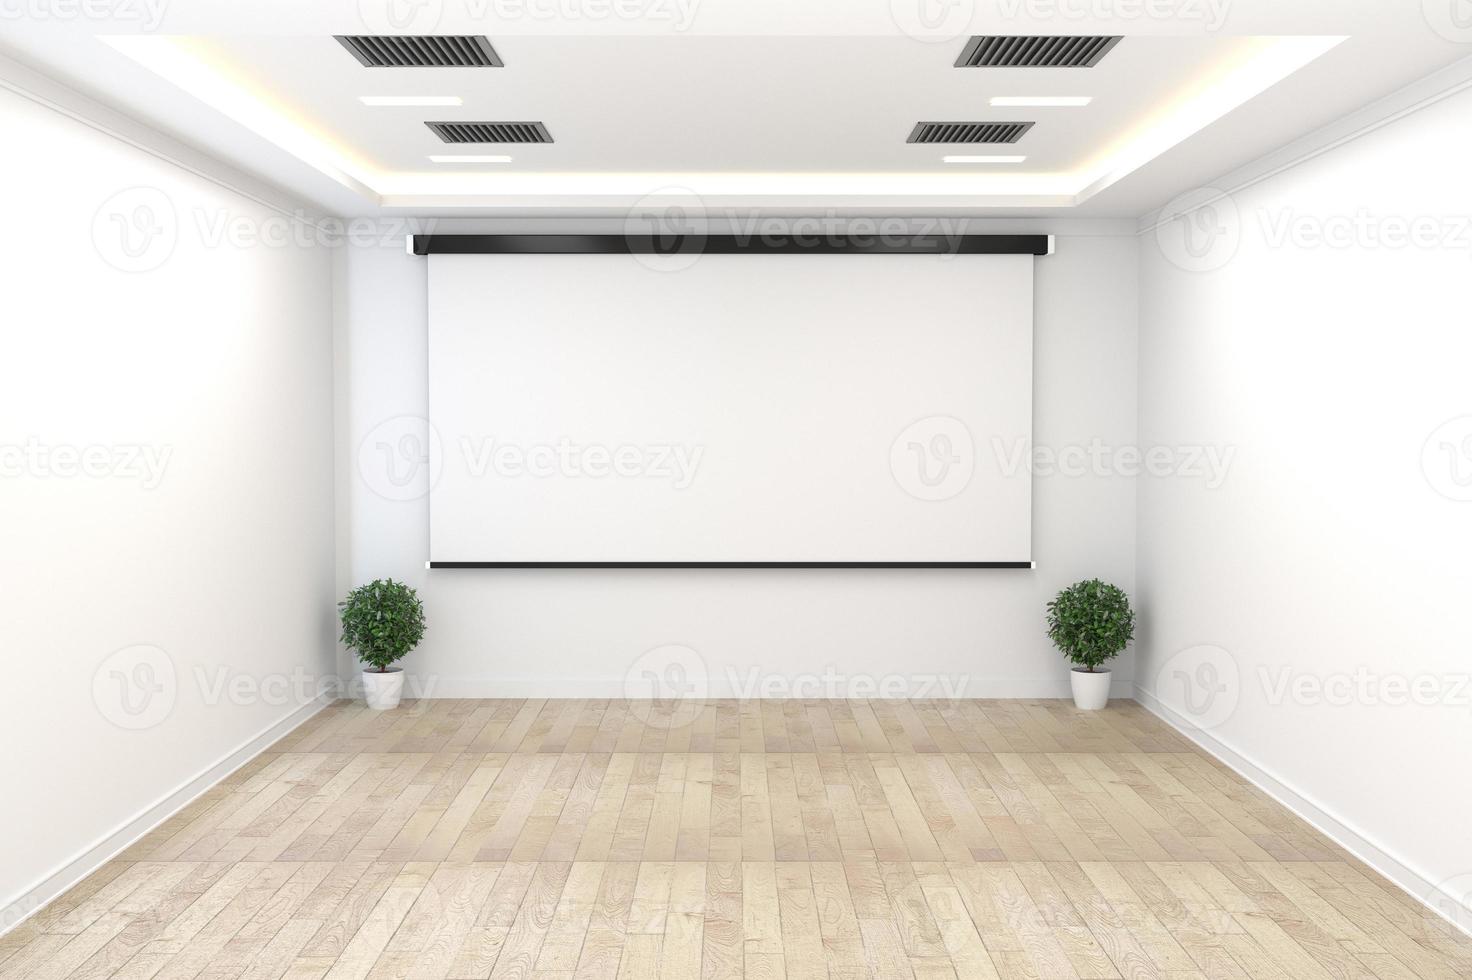 sala de reuniões - conceito vazio, interior de negócios com plantas e piso de madeira na parede branca vazia. Renderização 3d foto